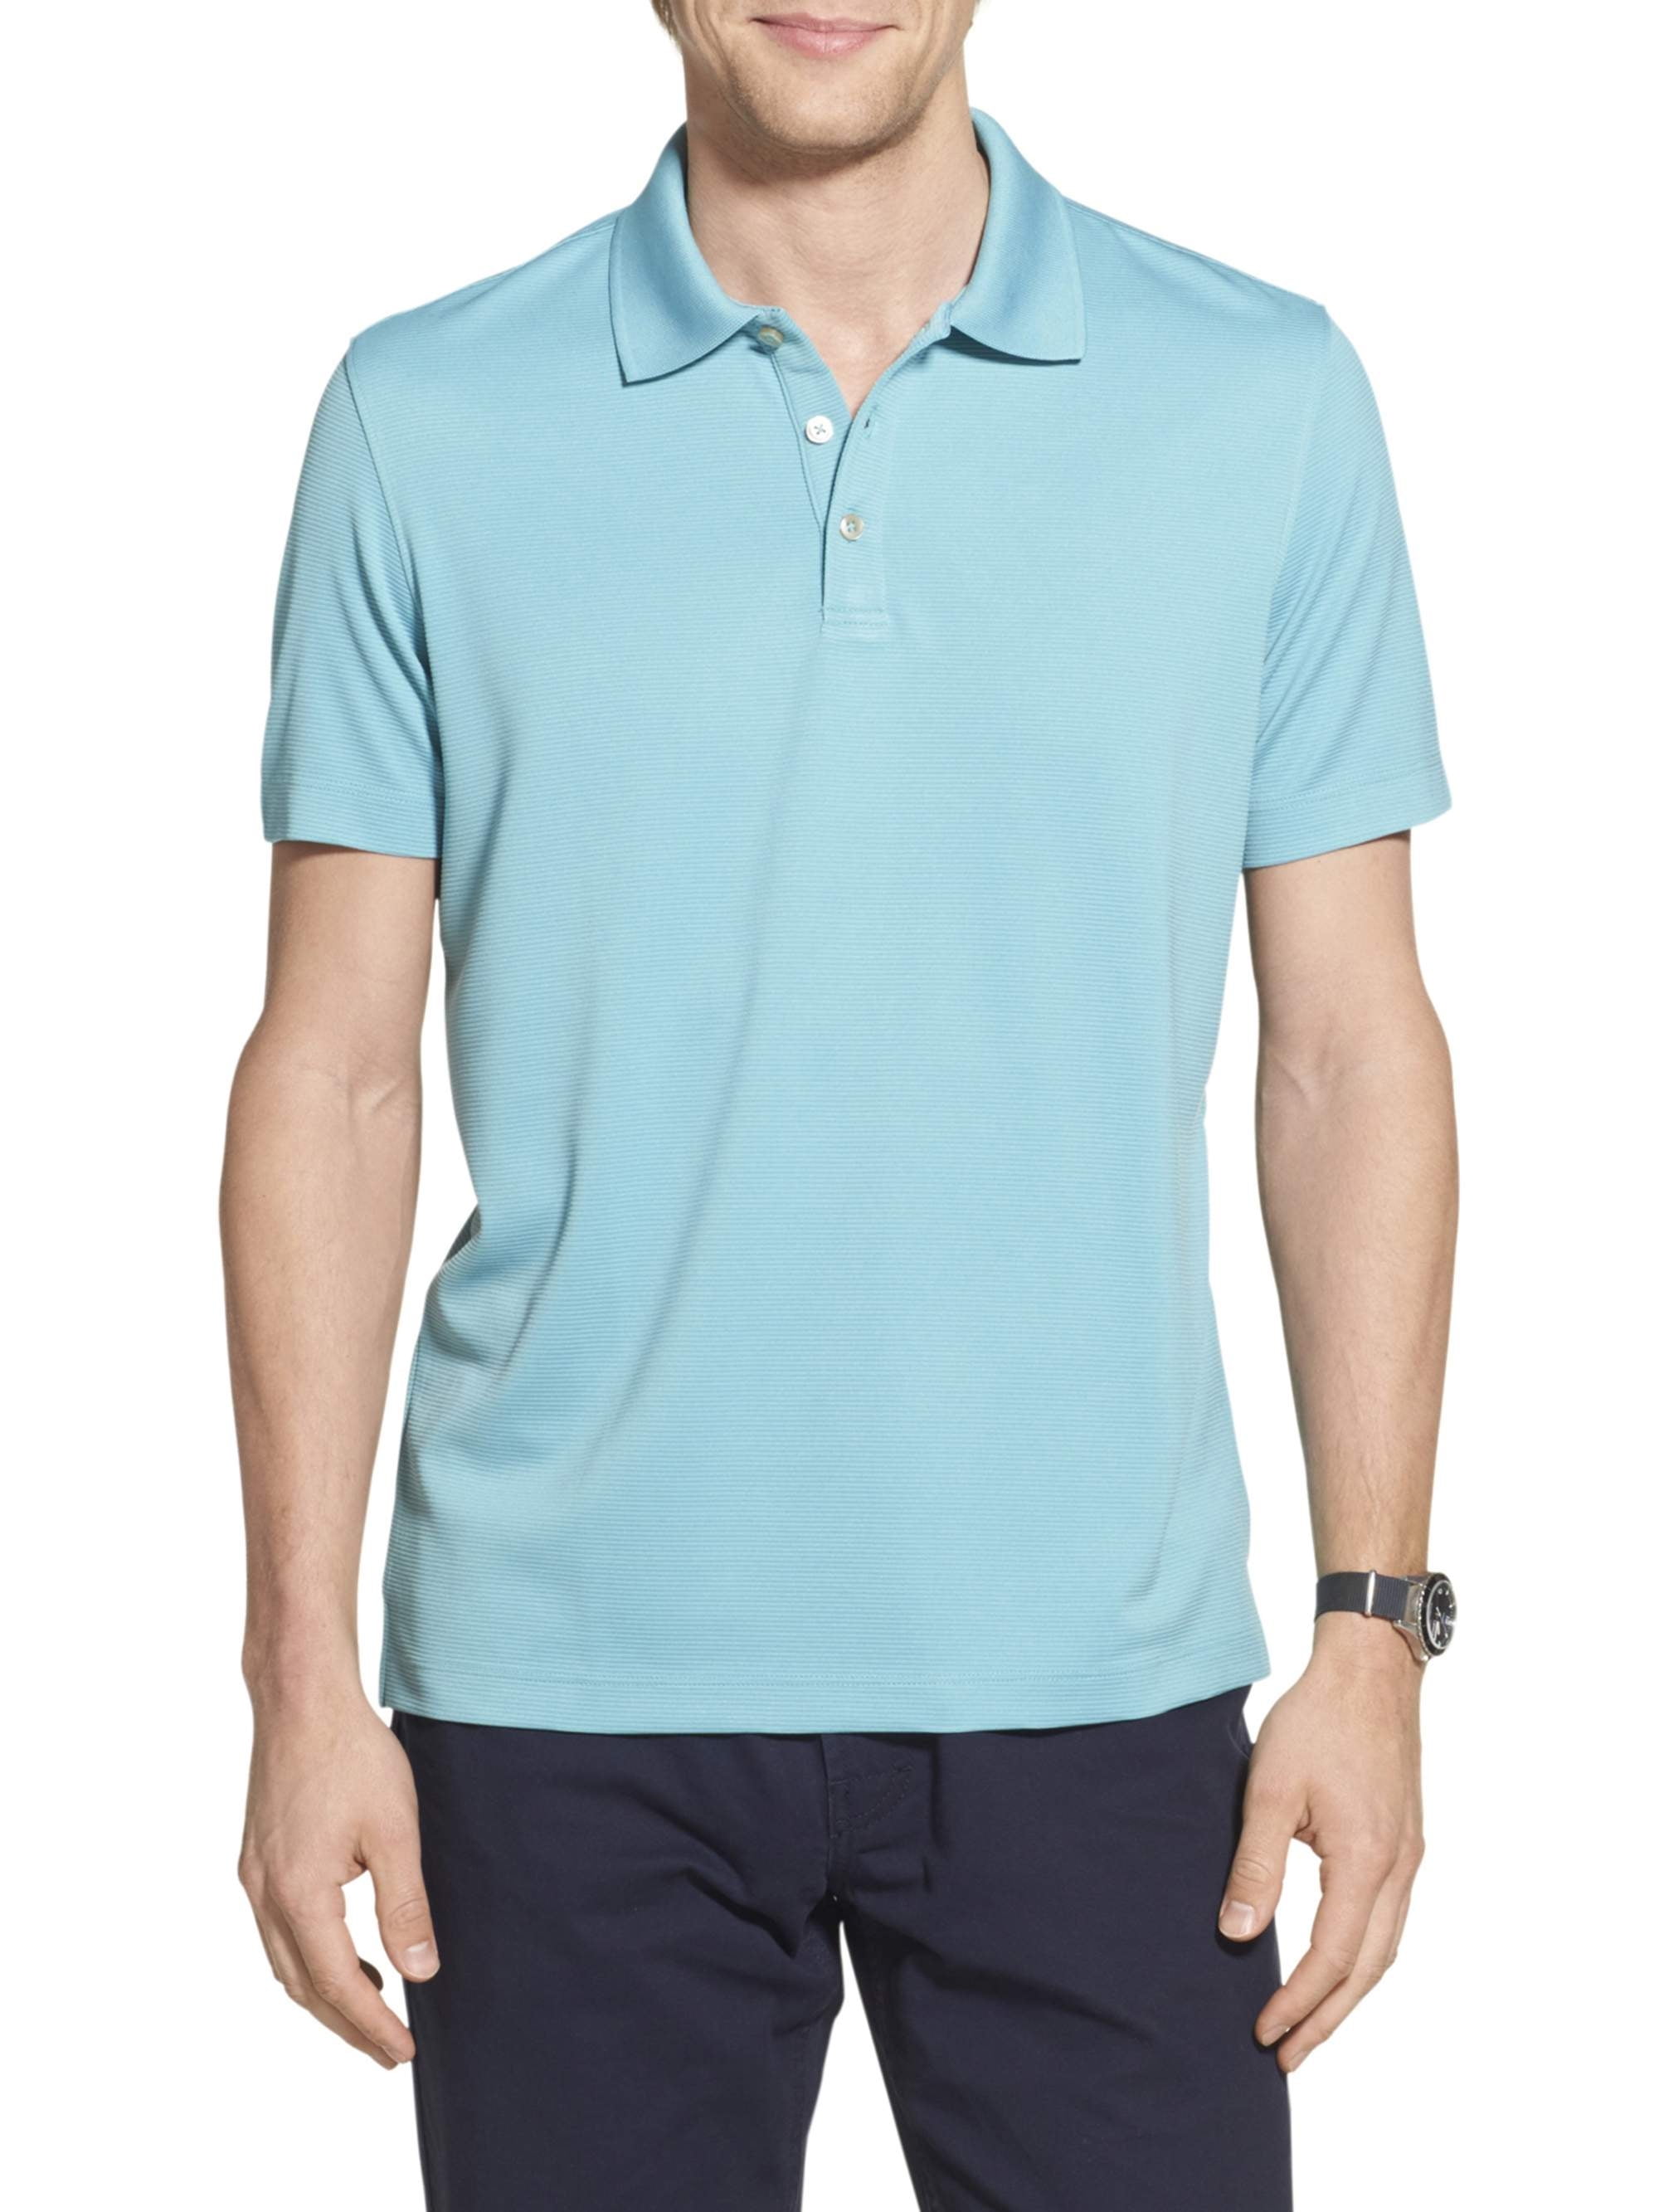 Geoffrey Beene Men's Short Sleeve Ottoman Polo Shirt - Walmart.com